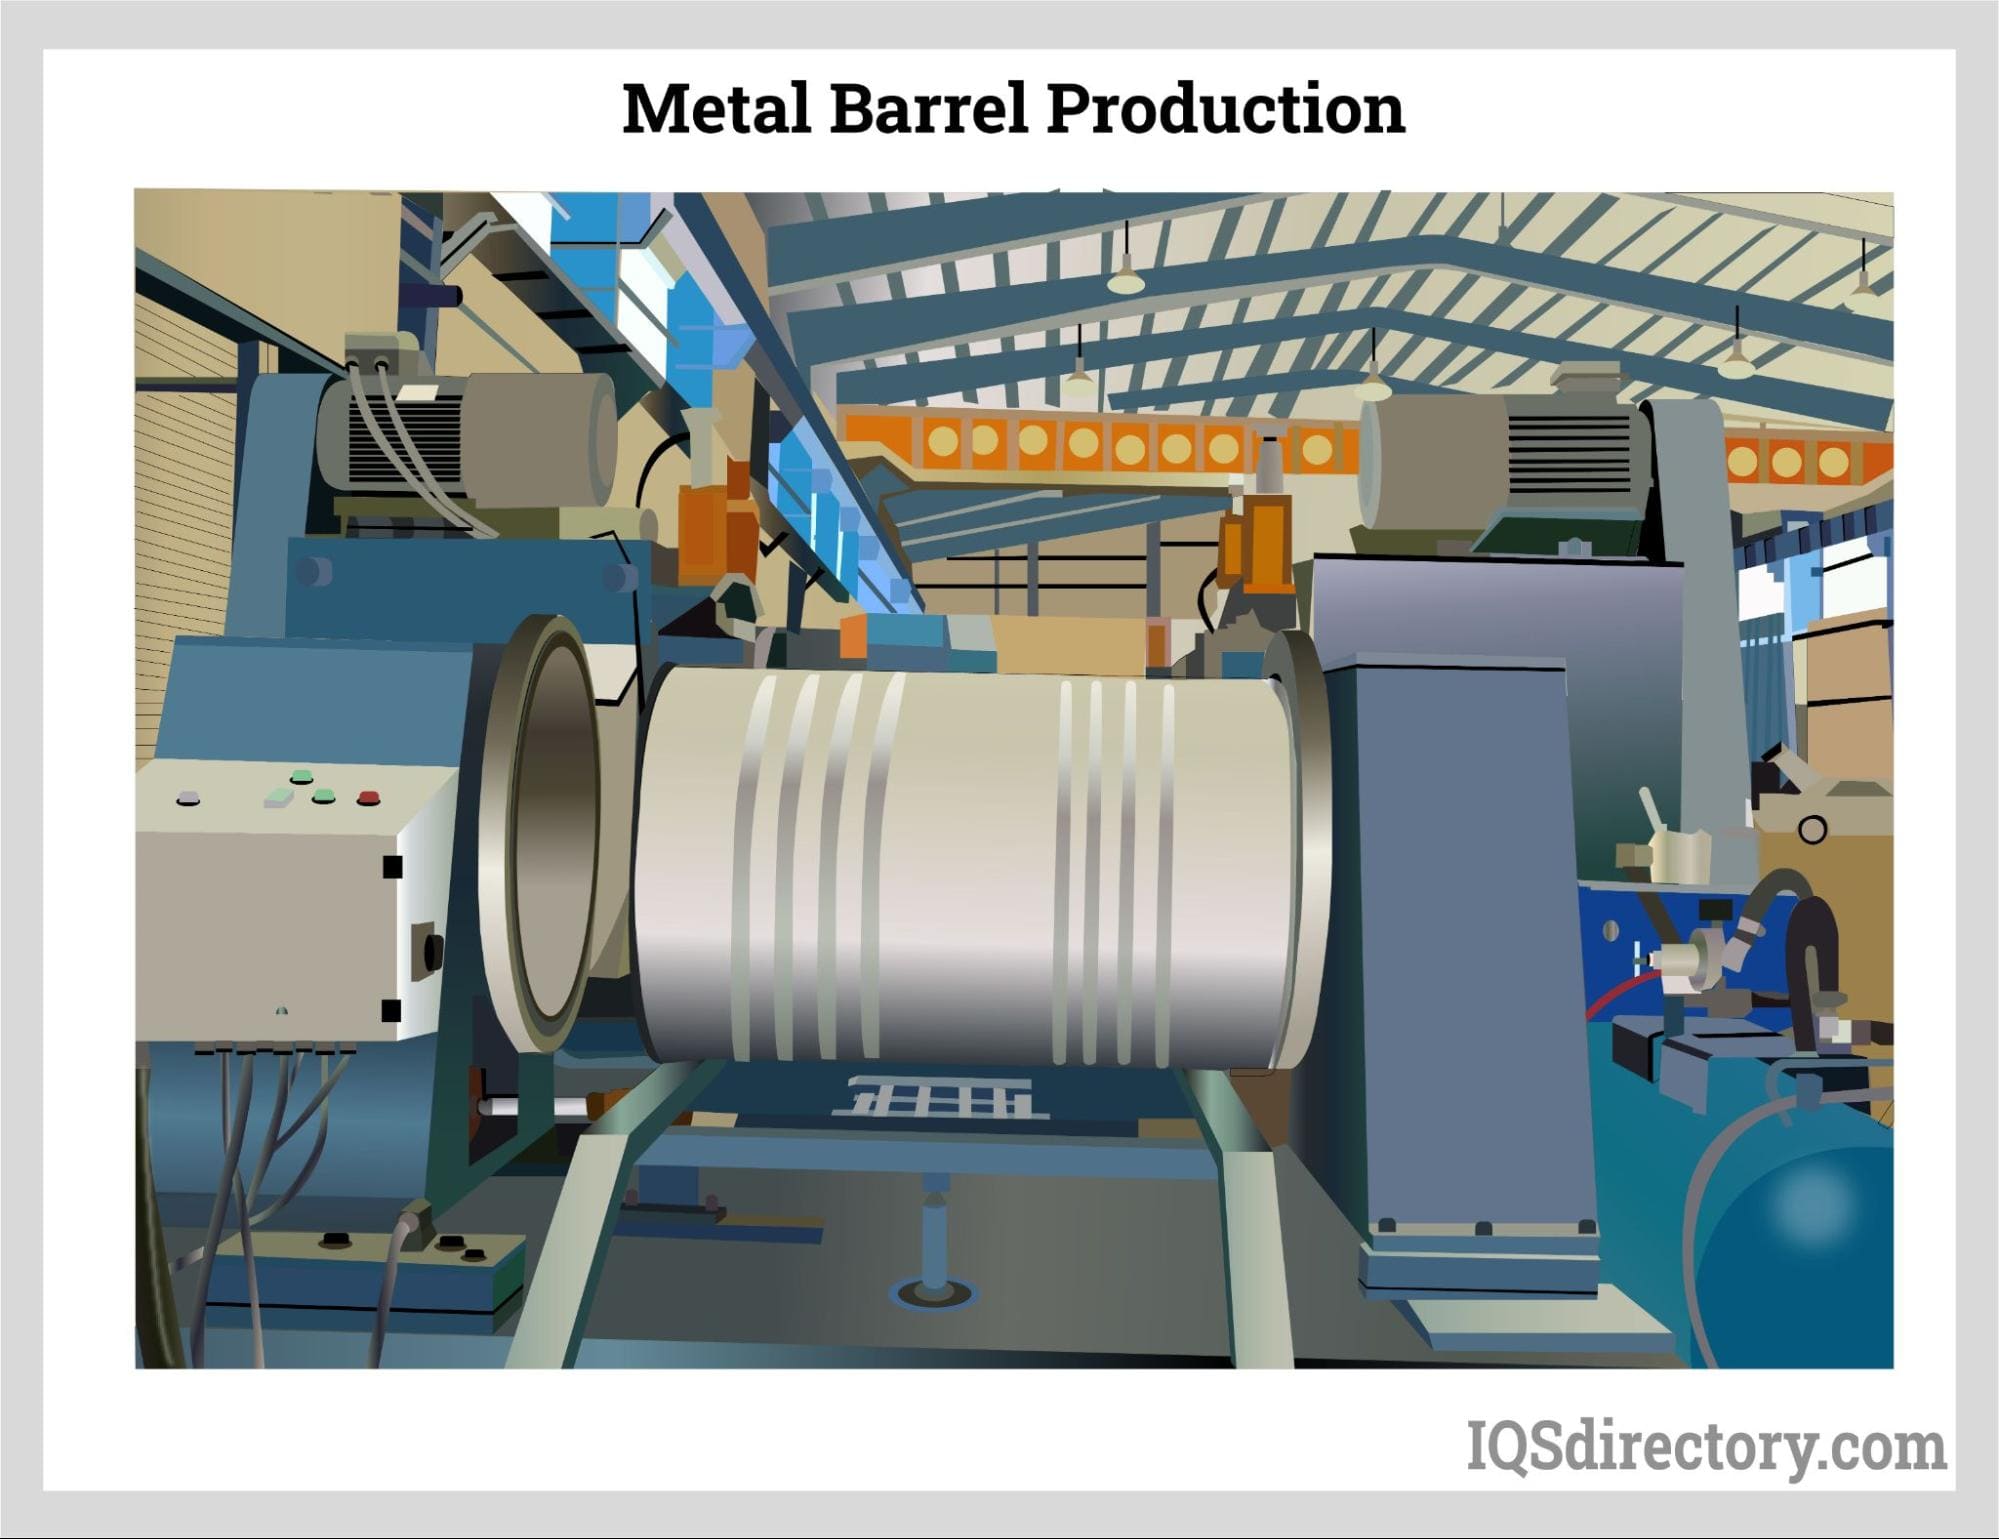 Metal Barrel Production